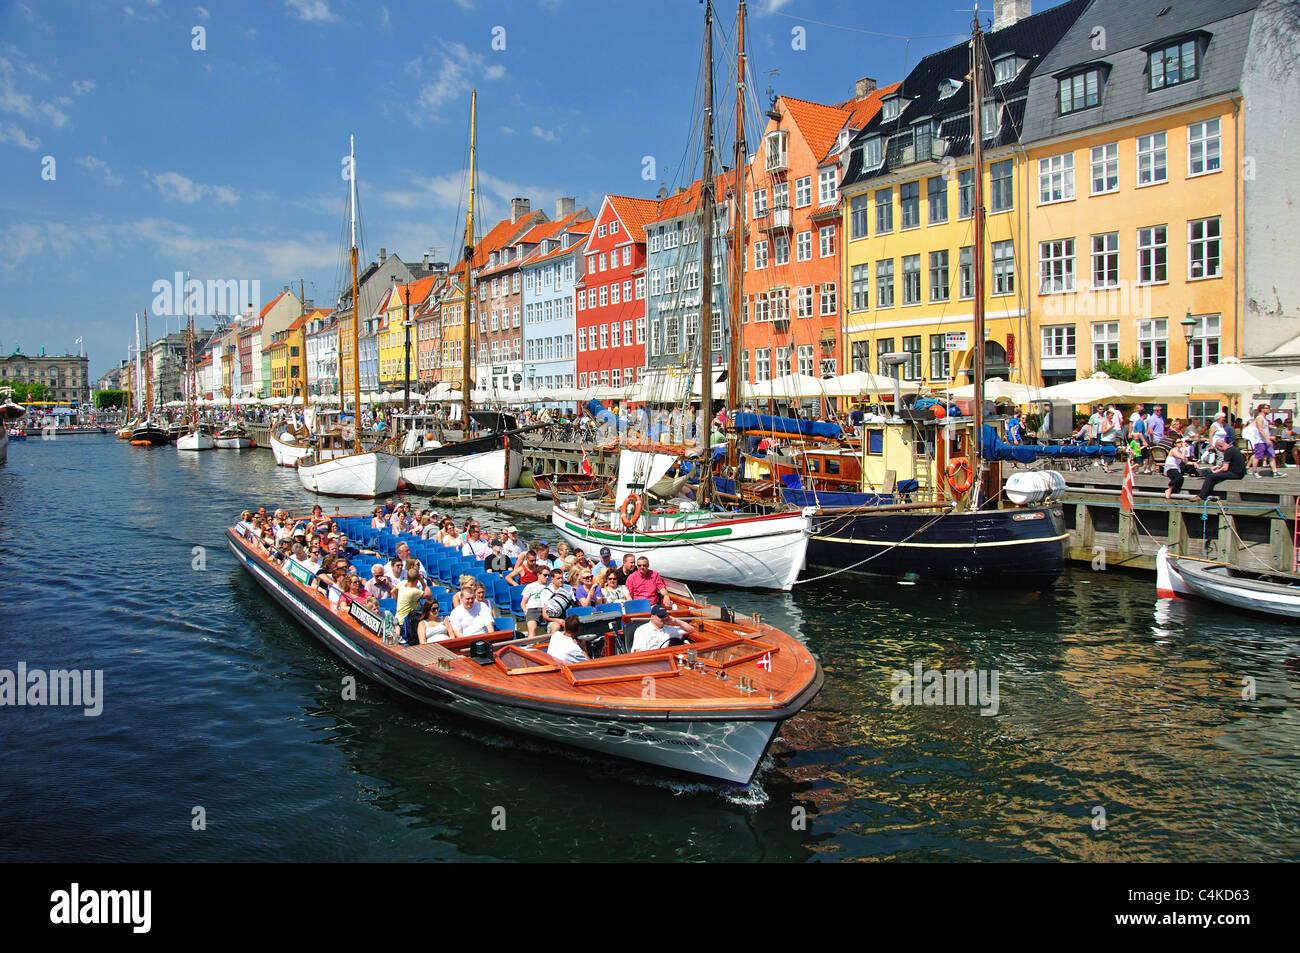 Bootstour auf dem farbenfrohen Ufer des 17. Jahrhunderts, Nyhavn-Kanal, Kopenhagen (Kobenhavn), Königreich Dänemark Stockfoto